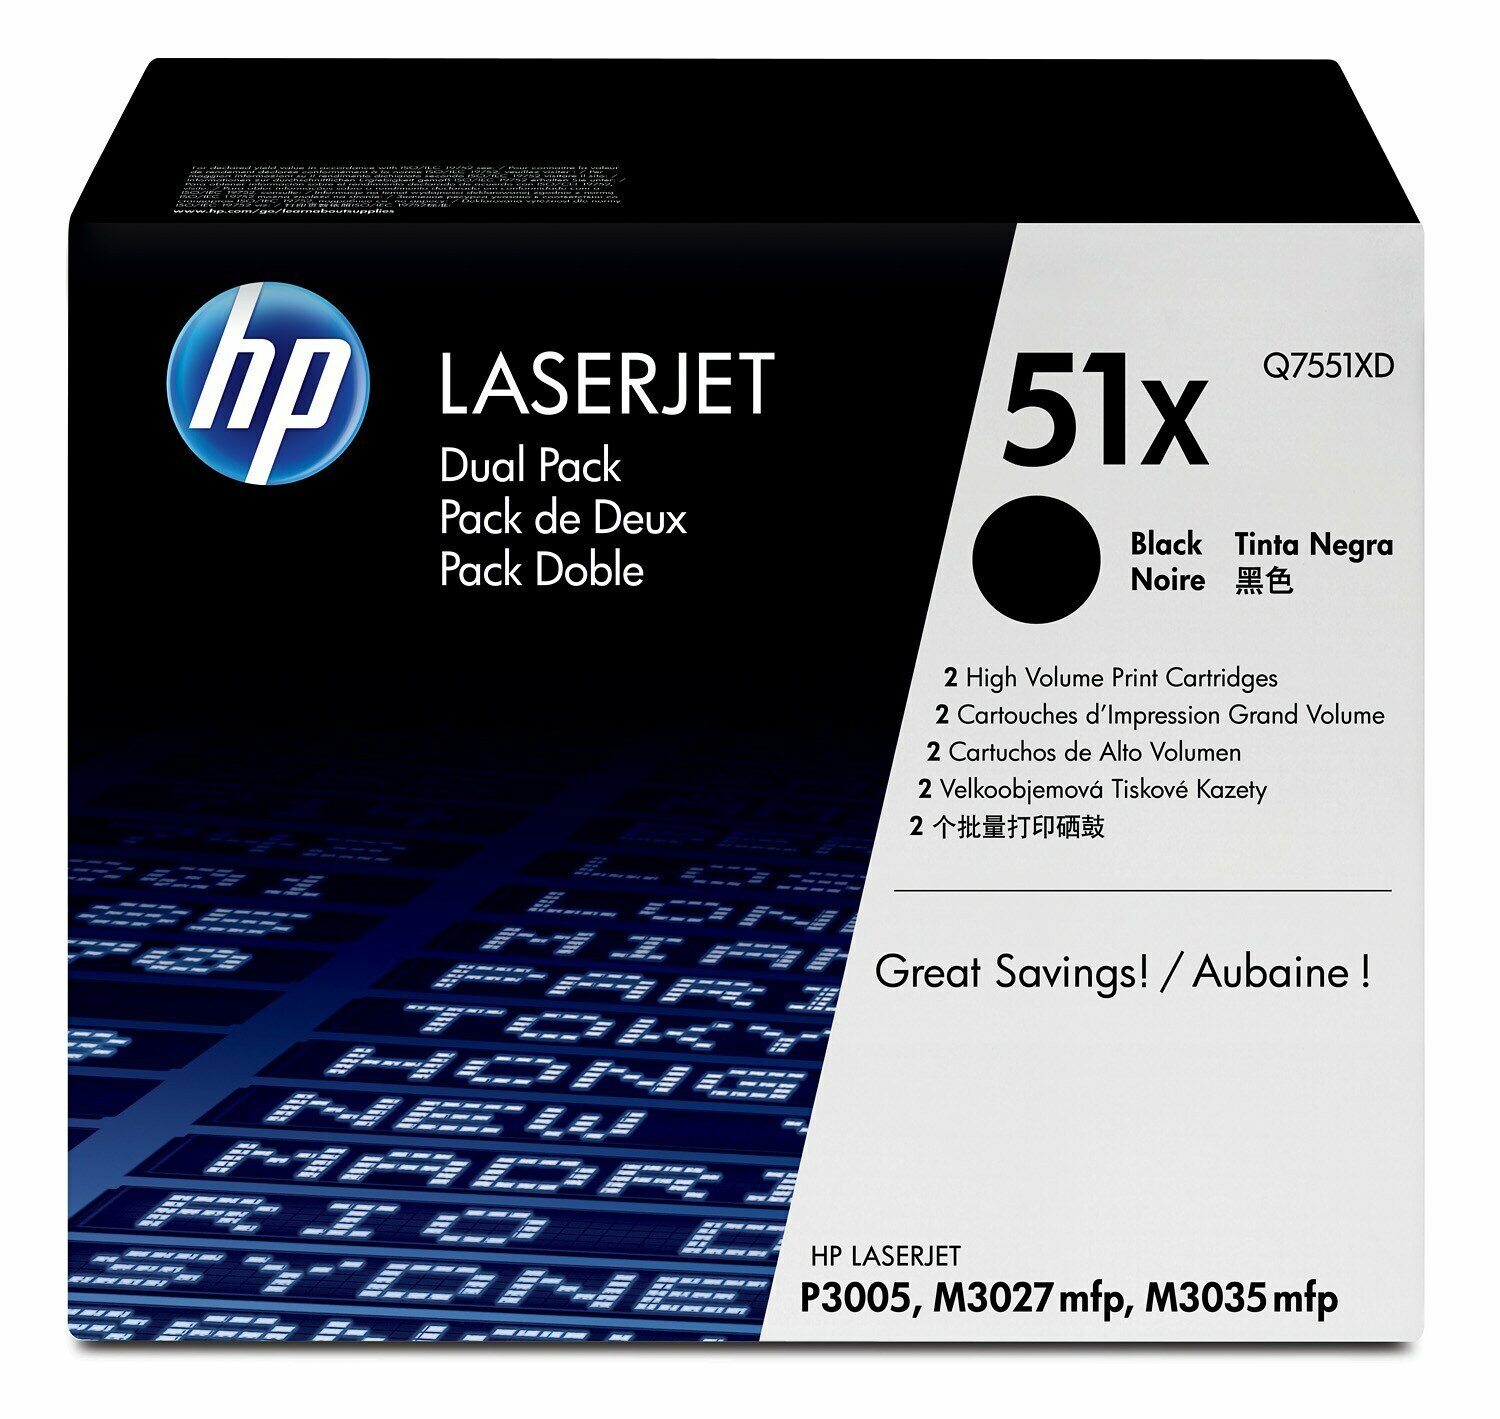 Картридж для печати HP Картридж HP 51X Q7551XD вид печати лазерный, цвет Черный, емкость